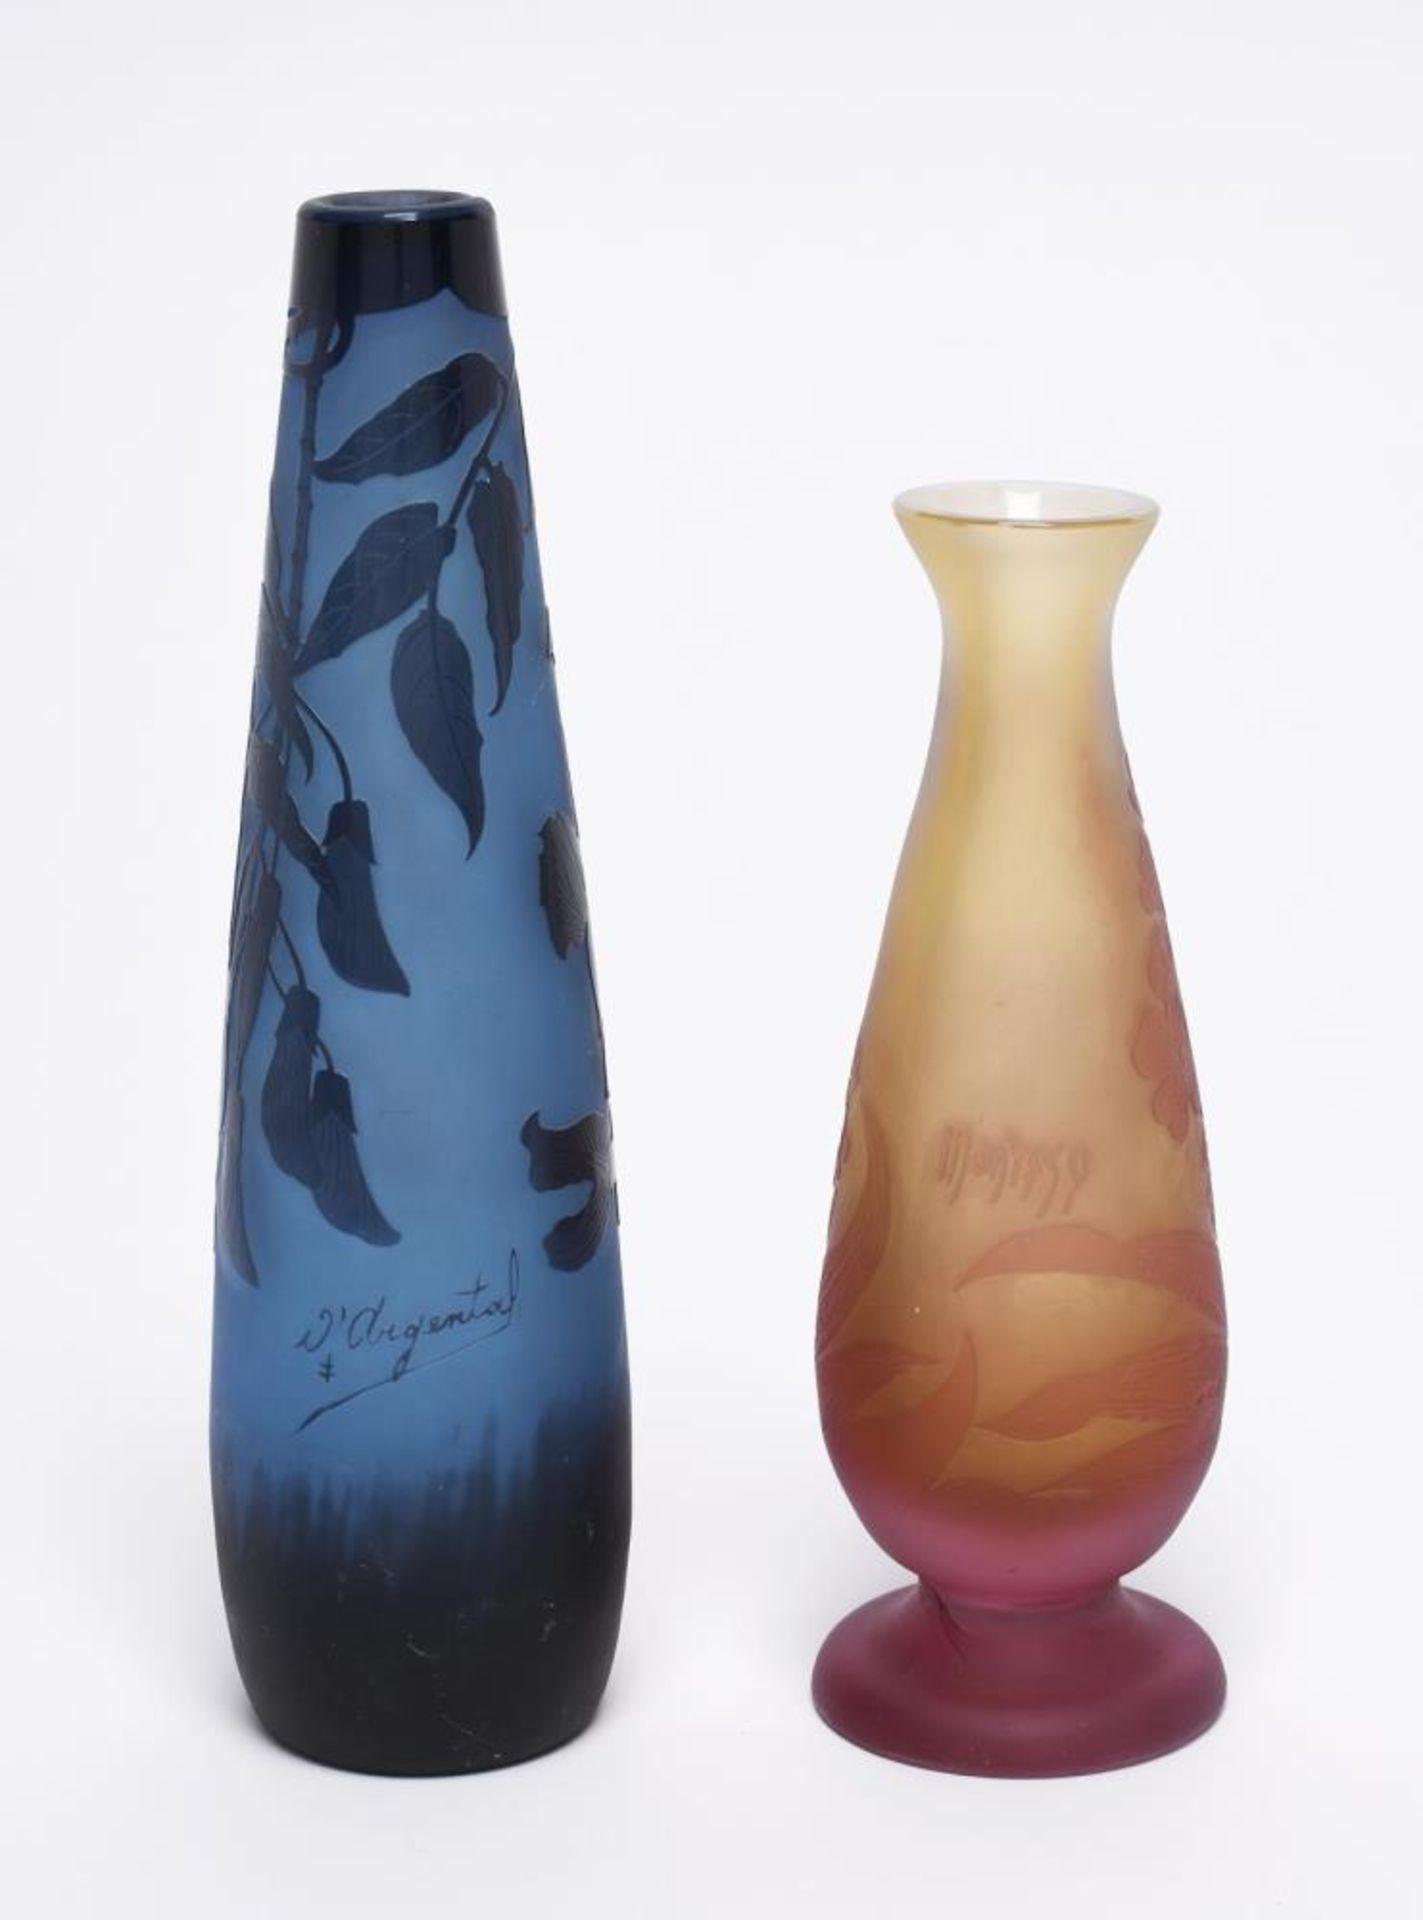 Zwei Vasen. Nancy, 1919-1925, Paul Nicolas (d'Argental) bzw. Rumänien, 1929-1945, Montesy, Henry | - Image 2 of 2